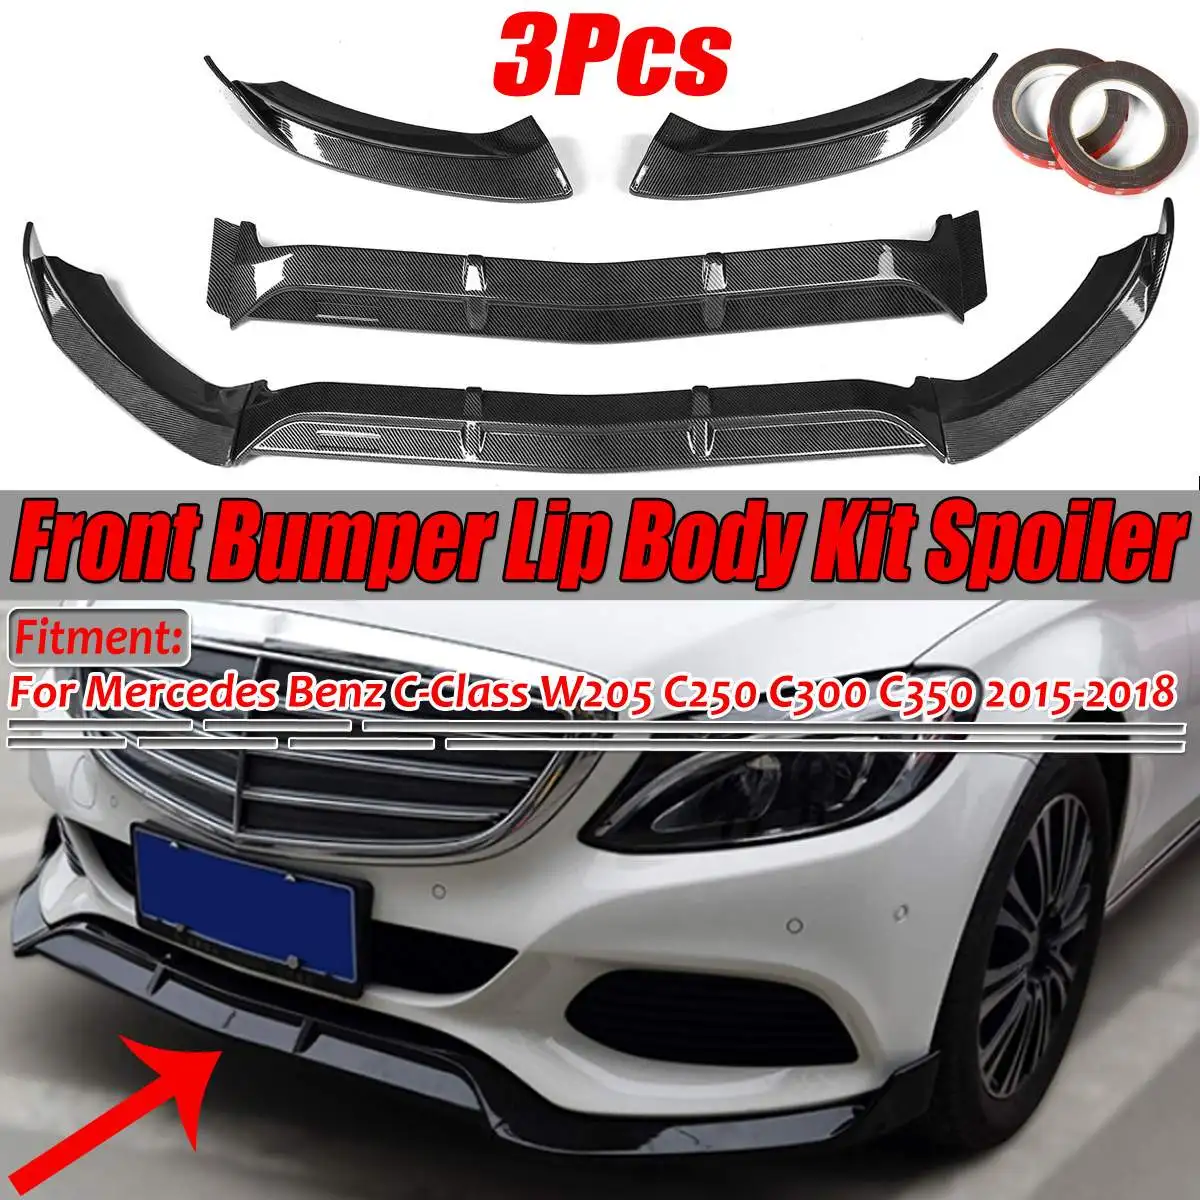 

W205 автомобильный передний бампер сплиттер губа диффузор защитный корпус комплект спойлер для Mercedes Benz C-Class W205 C250 C300 C350 2015-2018